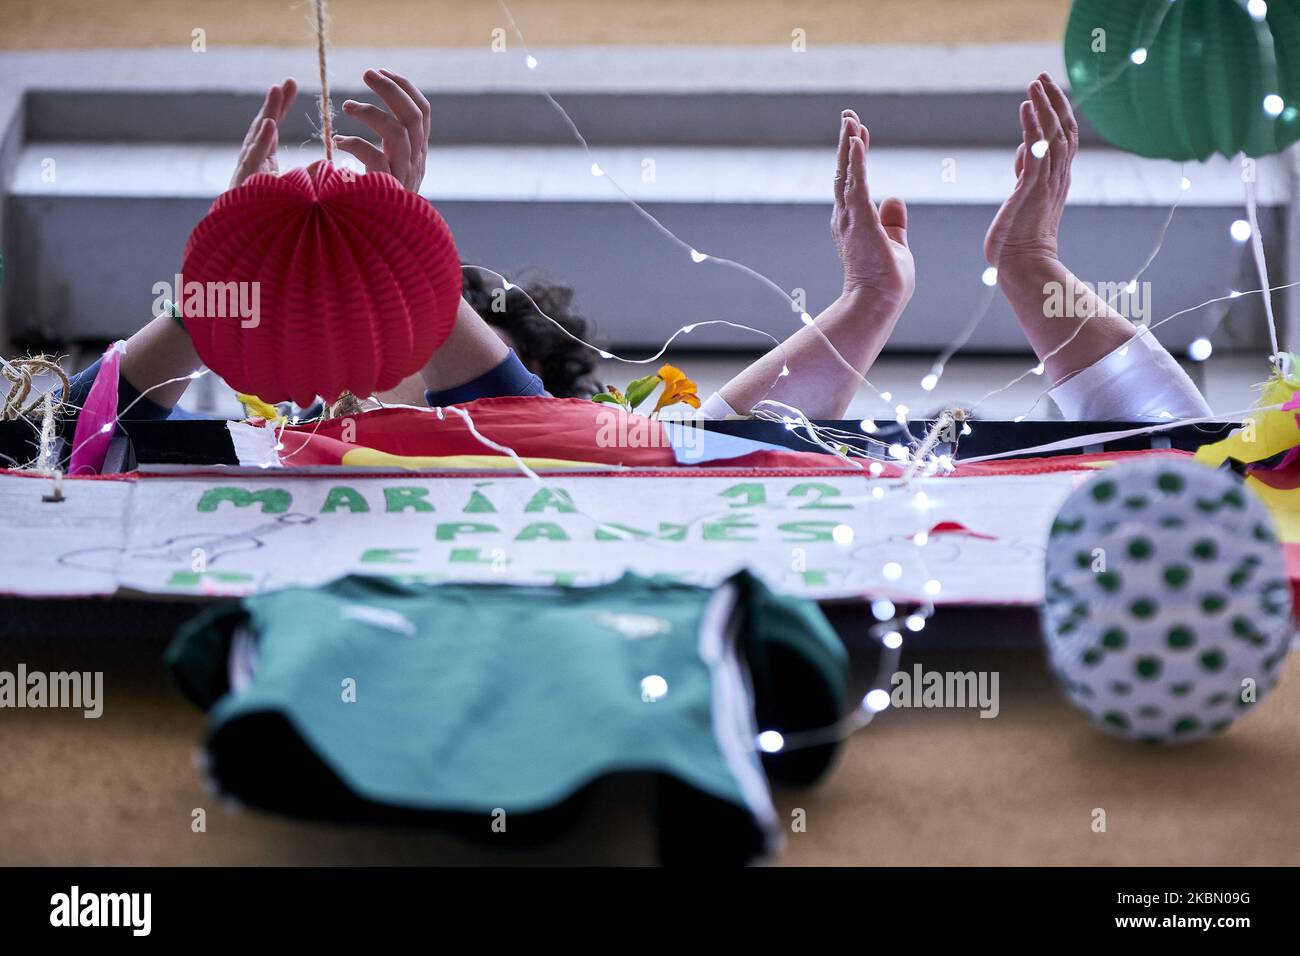 Les voisins de la rue Maria Panes à Madrid décorent la rue à l'occasion de la naissance de 'Feria de Abril' à Séville avec de la musique, des boissons et des drapeaux espagnols à Madrid, Espagne sur 25 avril 2020. (Photo de A. Ware/NurPhoto) Banque D'Images